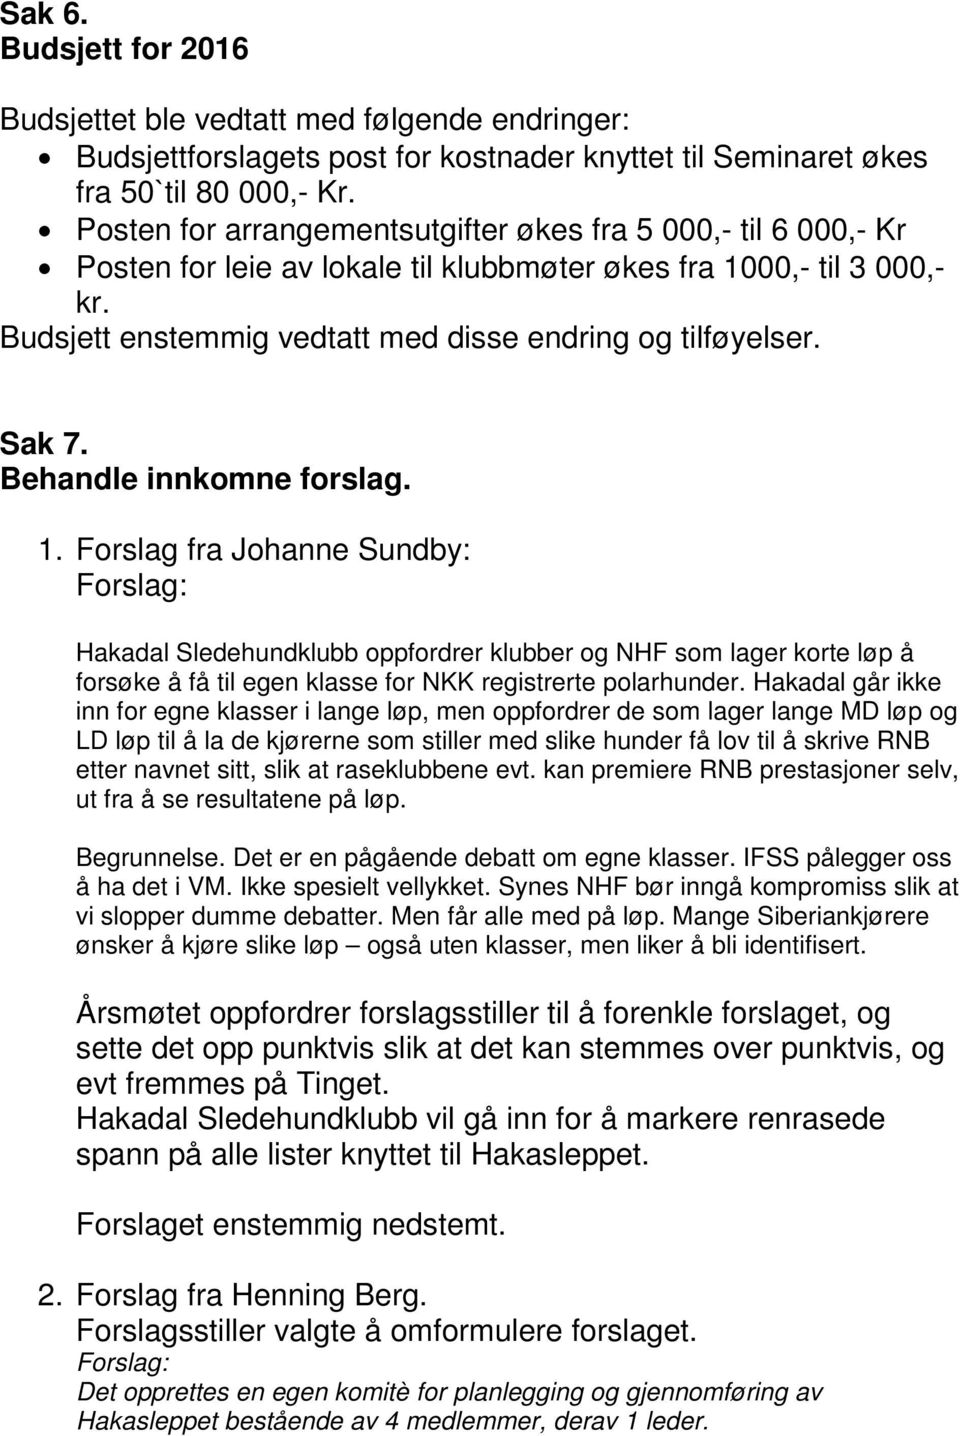 Sak 7. Behandle innkomne forslag. 1. Forslag fra Johanne Sundby: Hakadal Sledehundklubb oppfordrer klubber og NHF som lager korte løp å forsøke å få til egen klasse for NKK registrerte polarhunder.